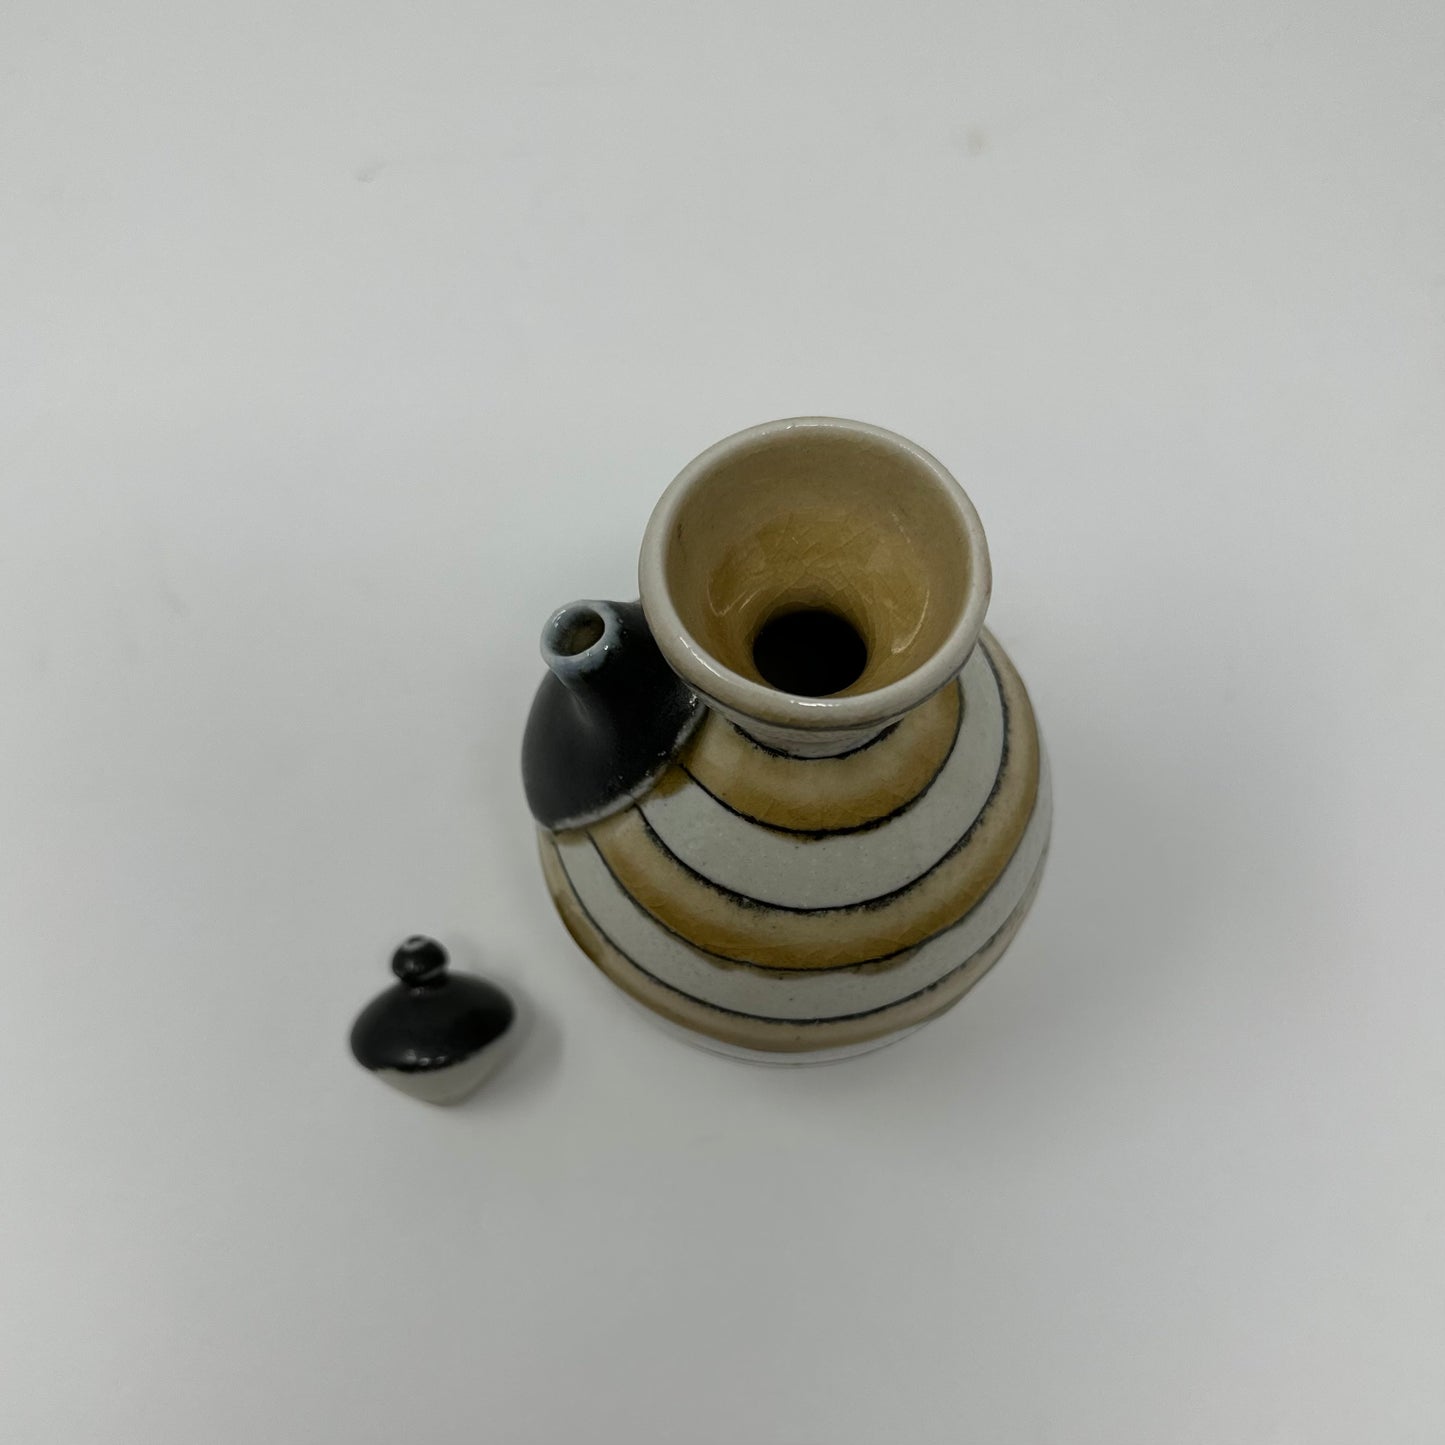 Stipes Ceramic Vase